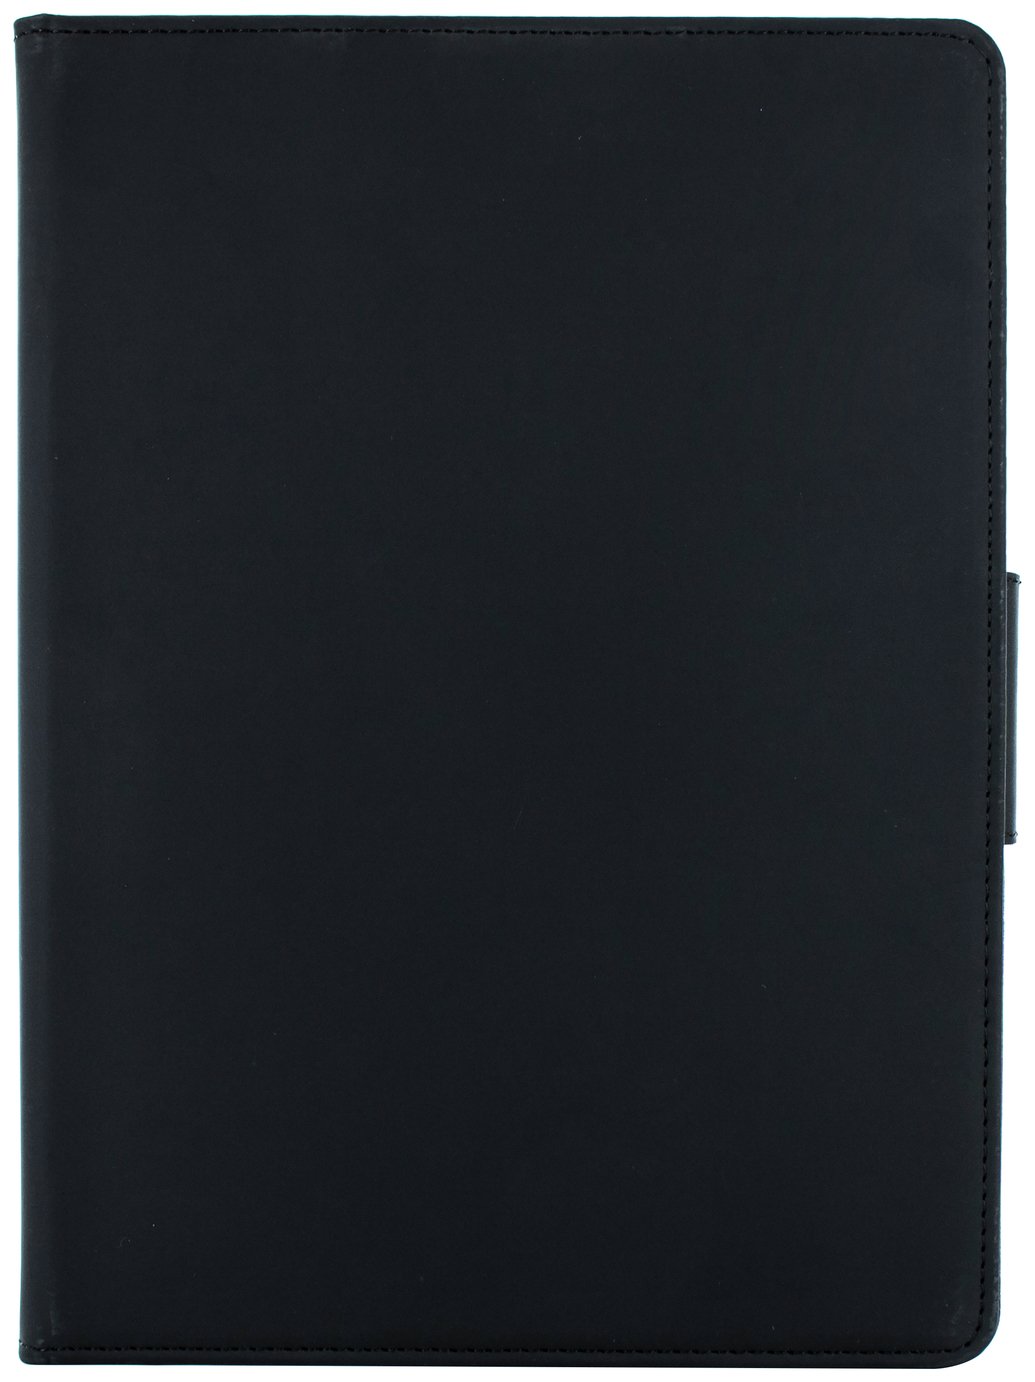 Proporta iPad Pro 12.9 Inch Folio Tablet Case - Black